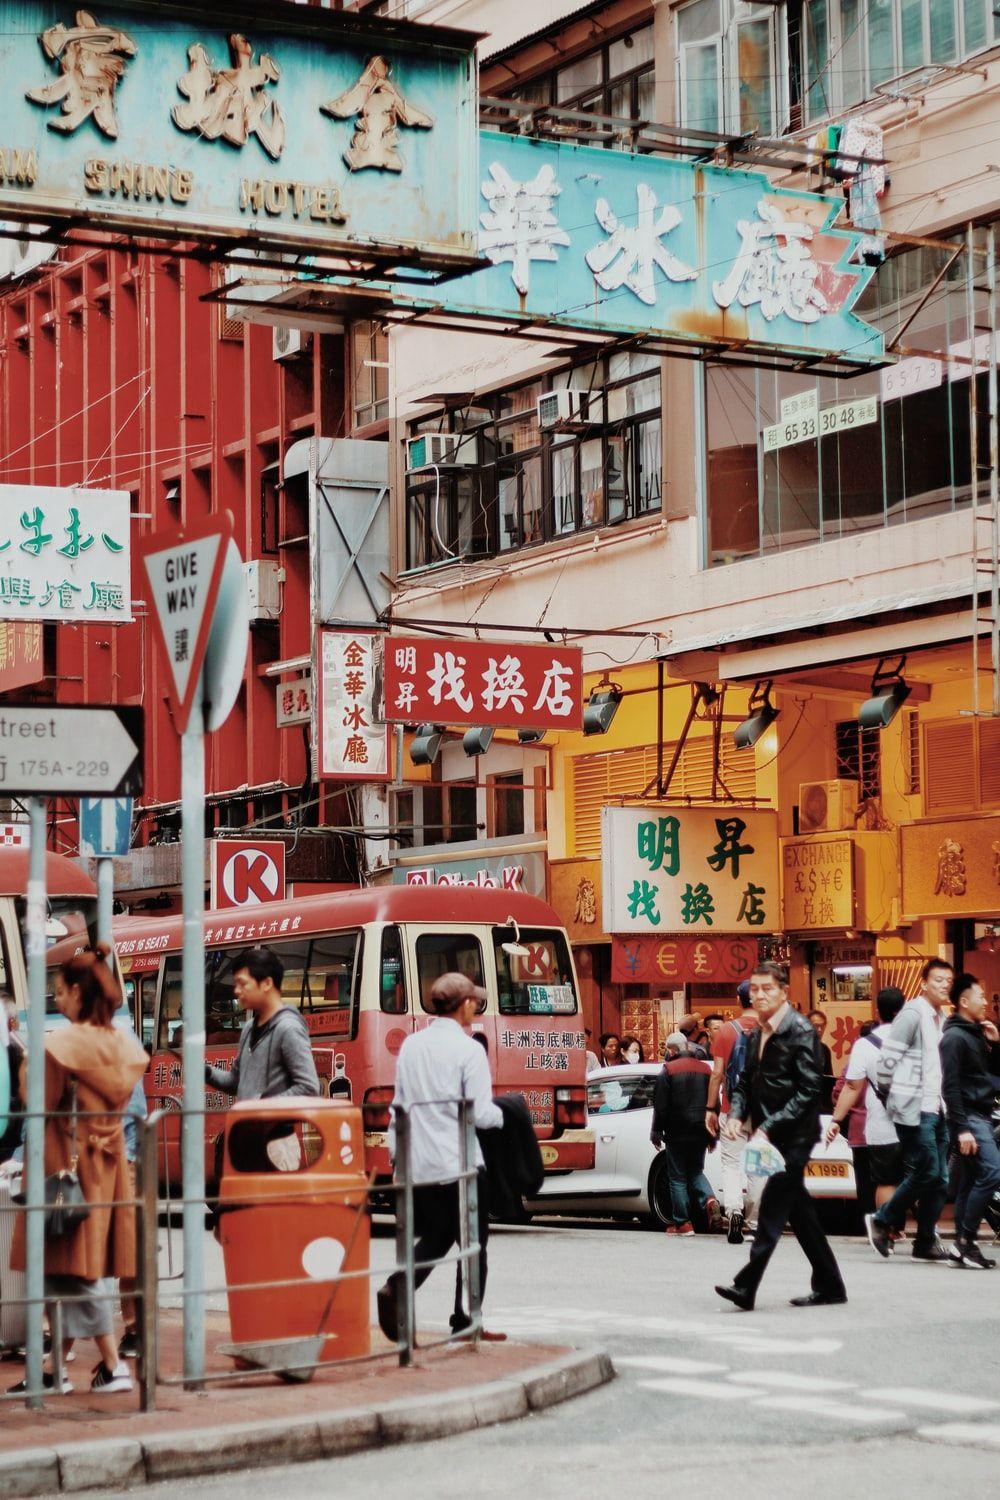 Old Hong Kong Wallpapers - Top Free Old Hong Kong Backgrounds